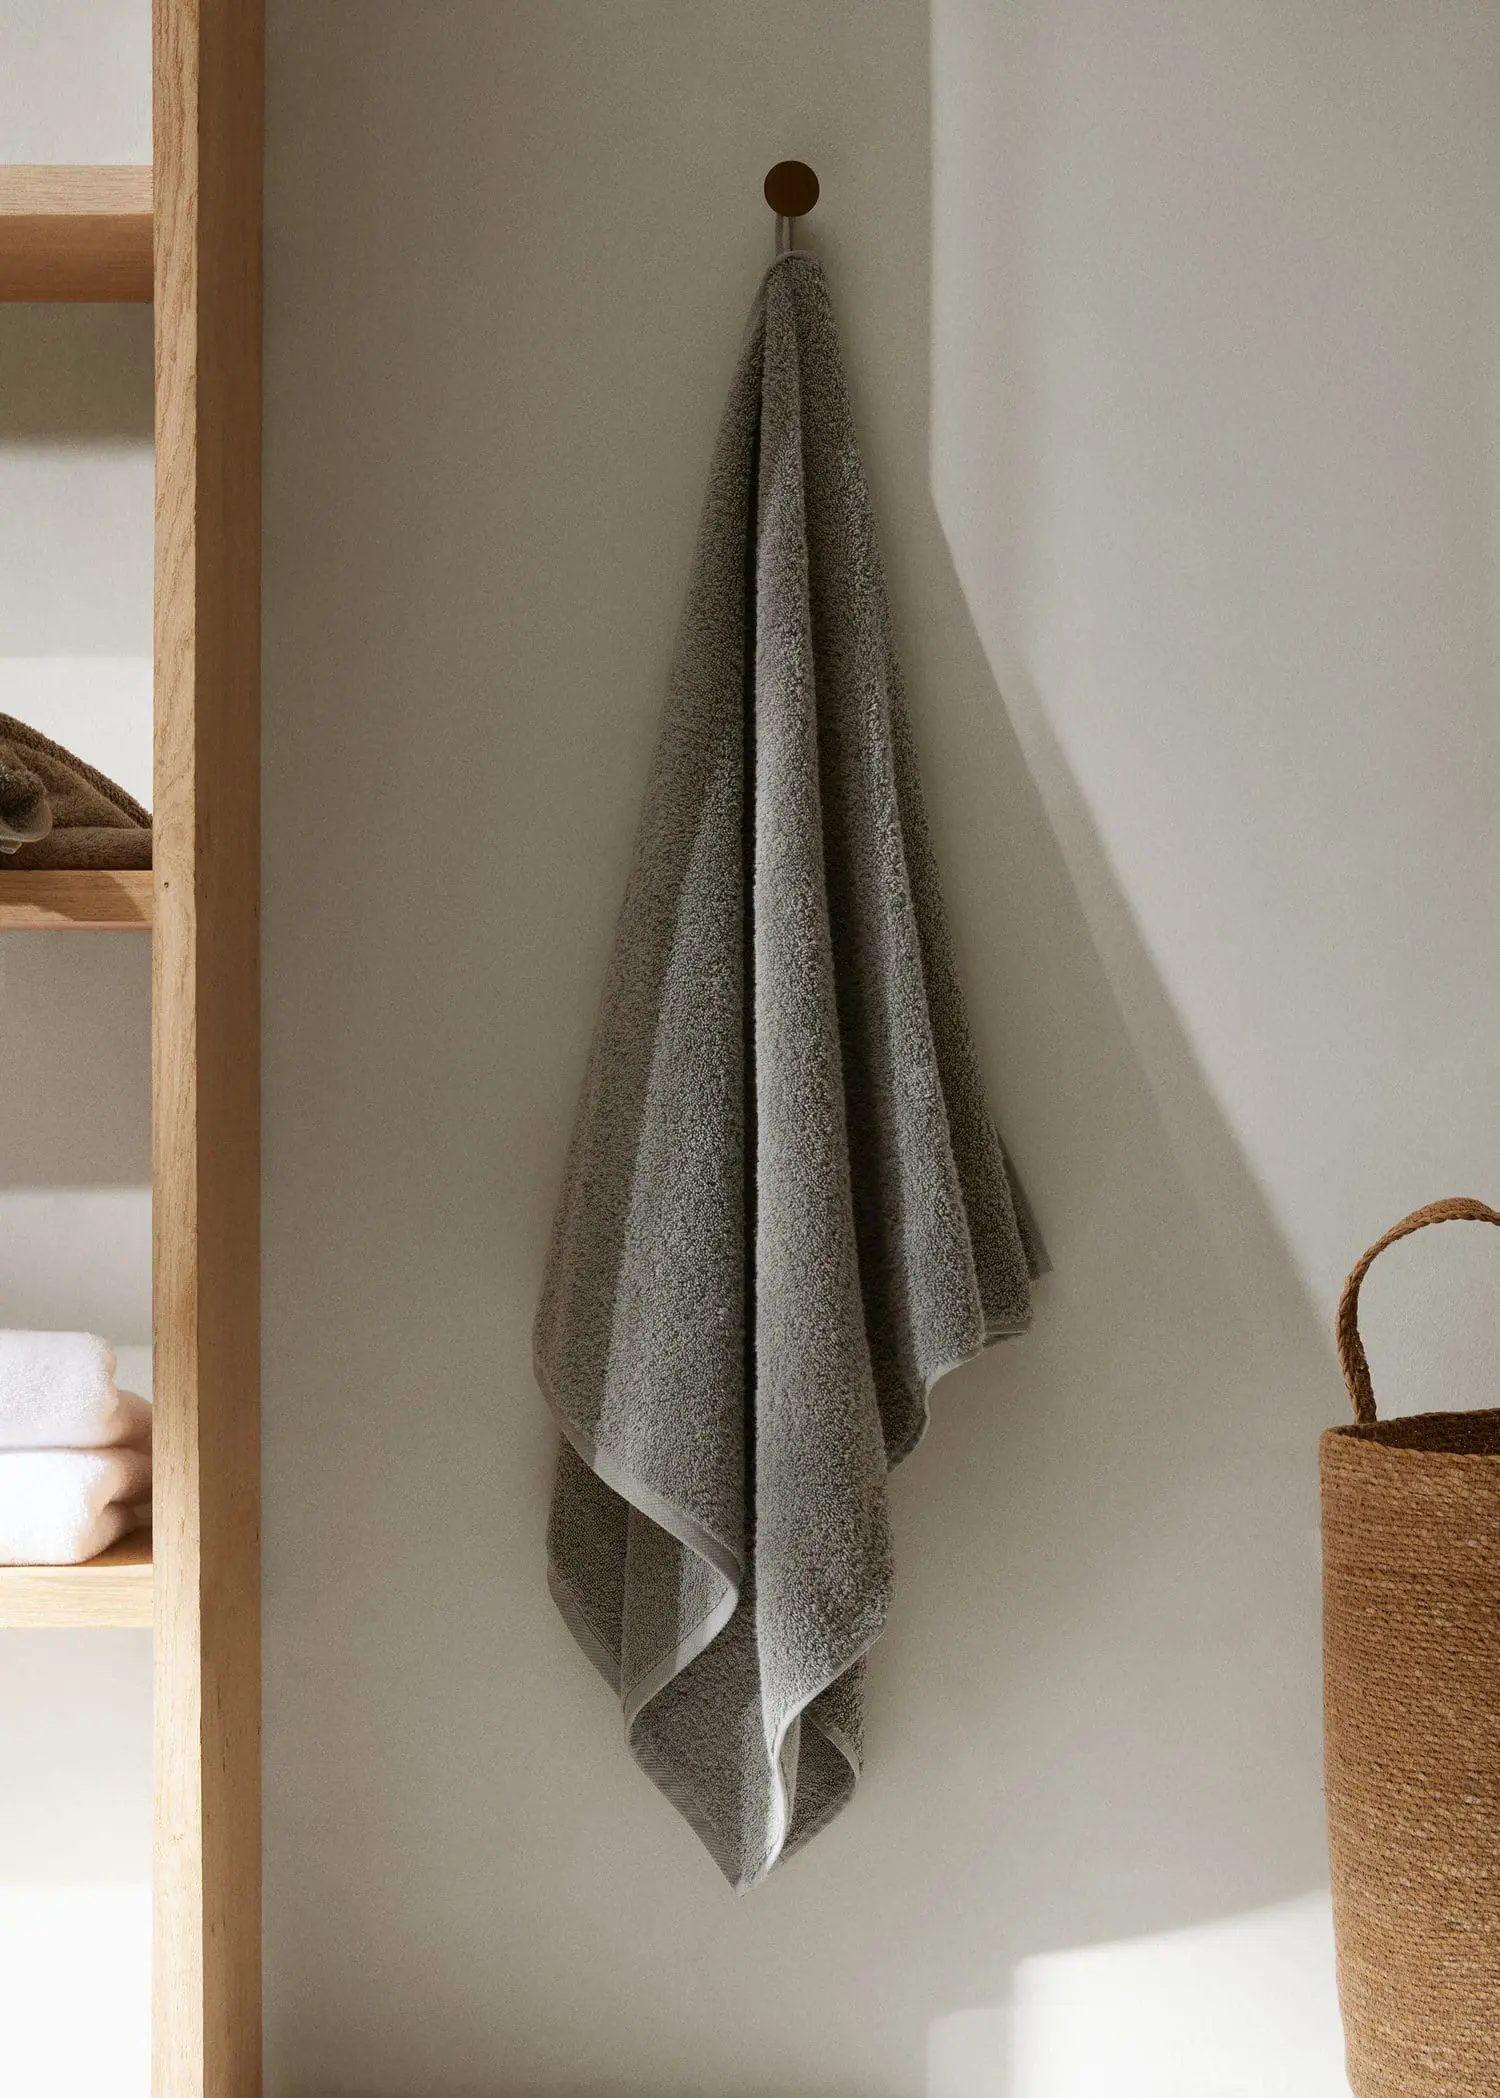 Mango Cotton 500gr/m2 hand towel 50x90cm . 1